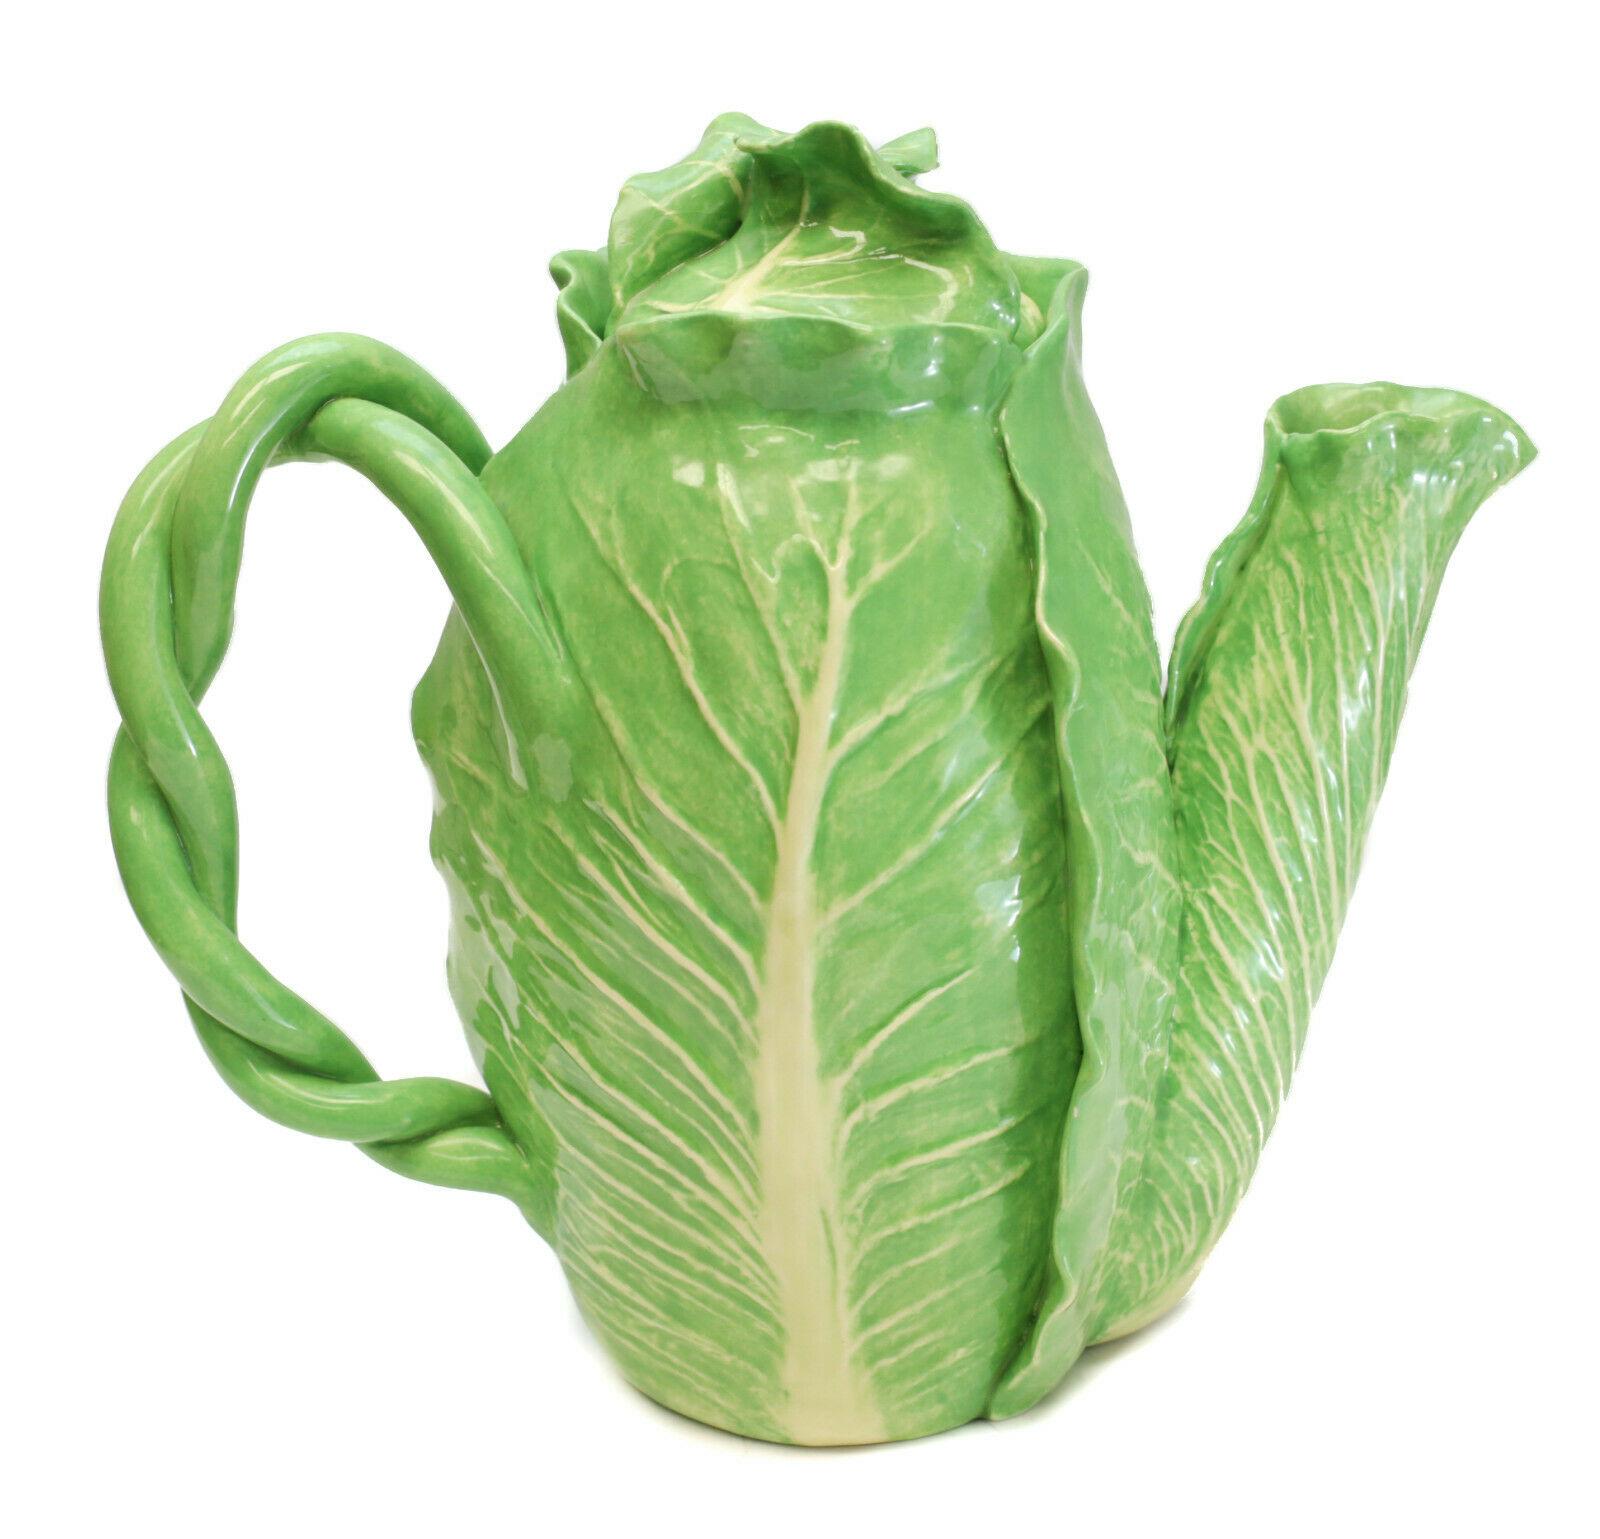 Dodie Thayer lettuce leaf ware Au Bon Gout porcelain teapot, circa 1985. Twisted stem handle. Dodie Thayer Au Bon Gout mark to the underside.